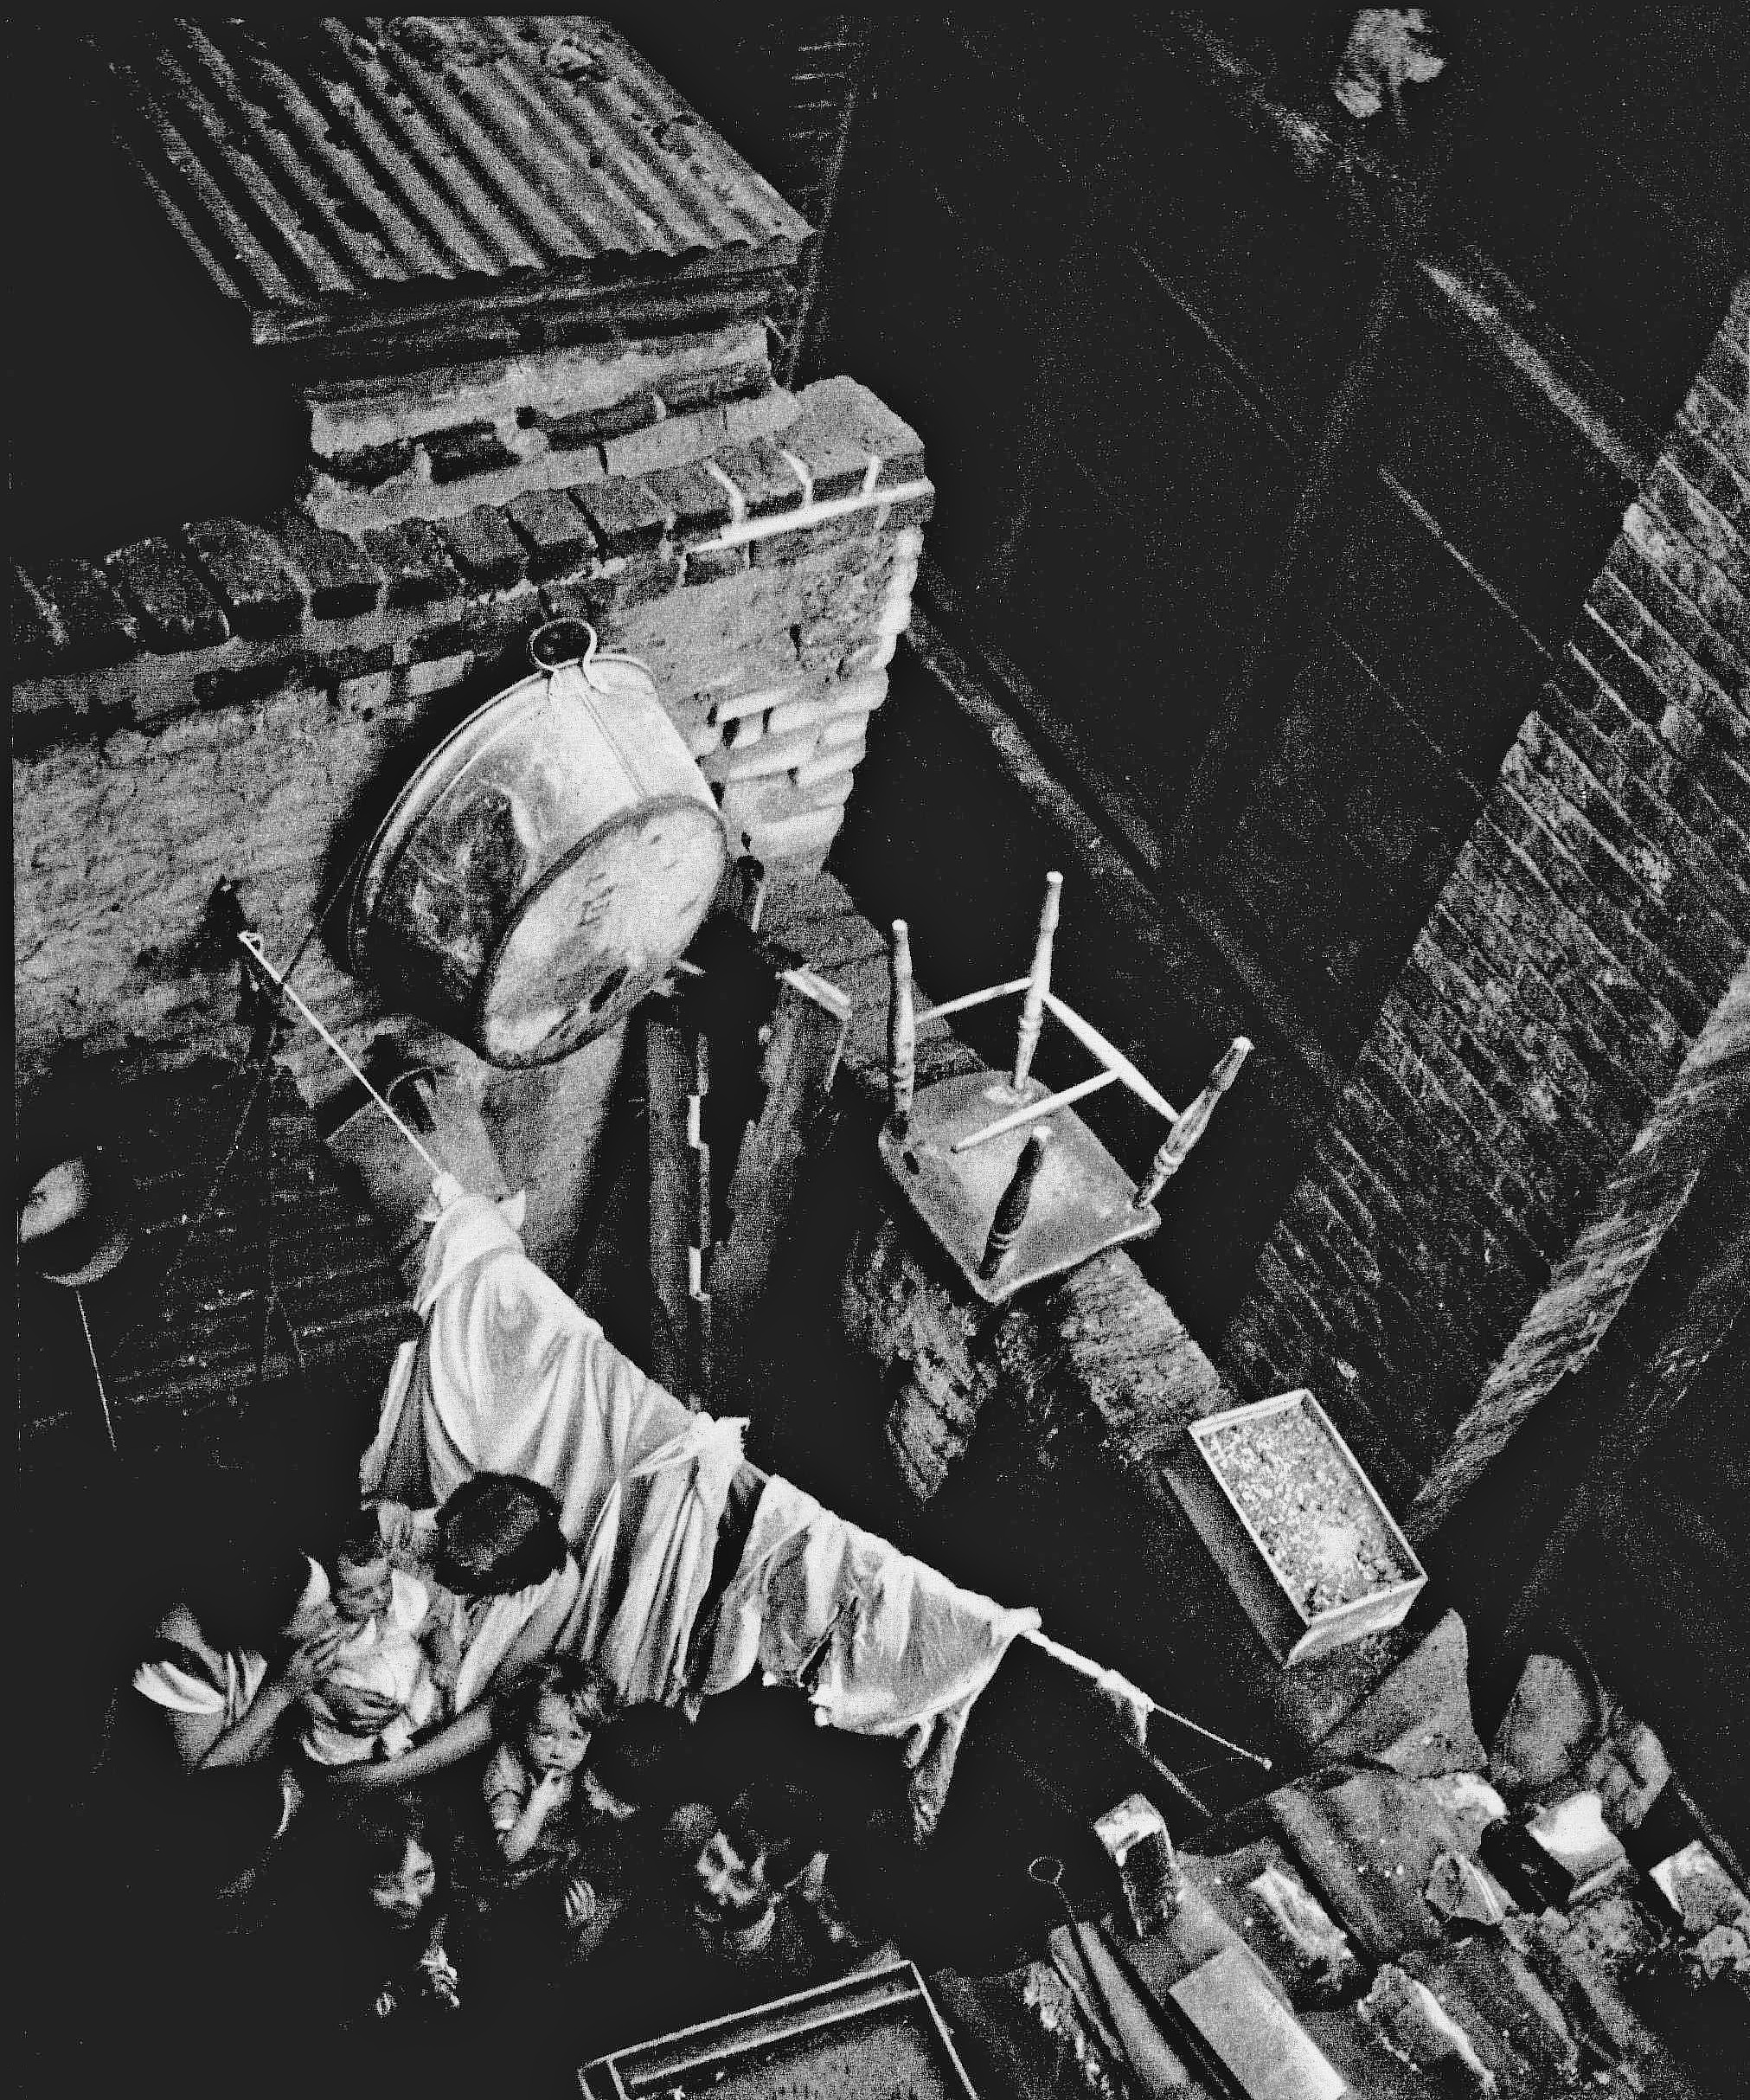 London Slum by Edith Tudor Hart – Our Bow